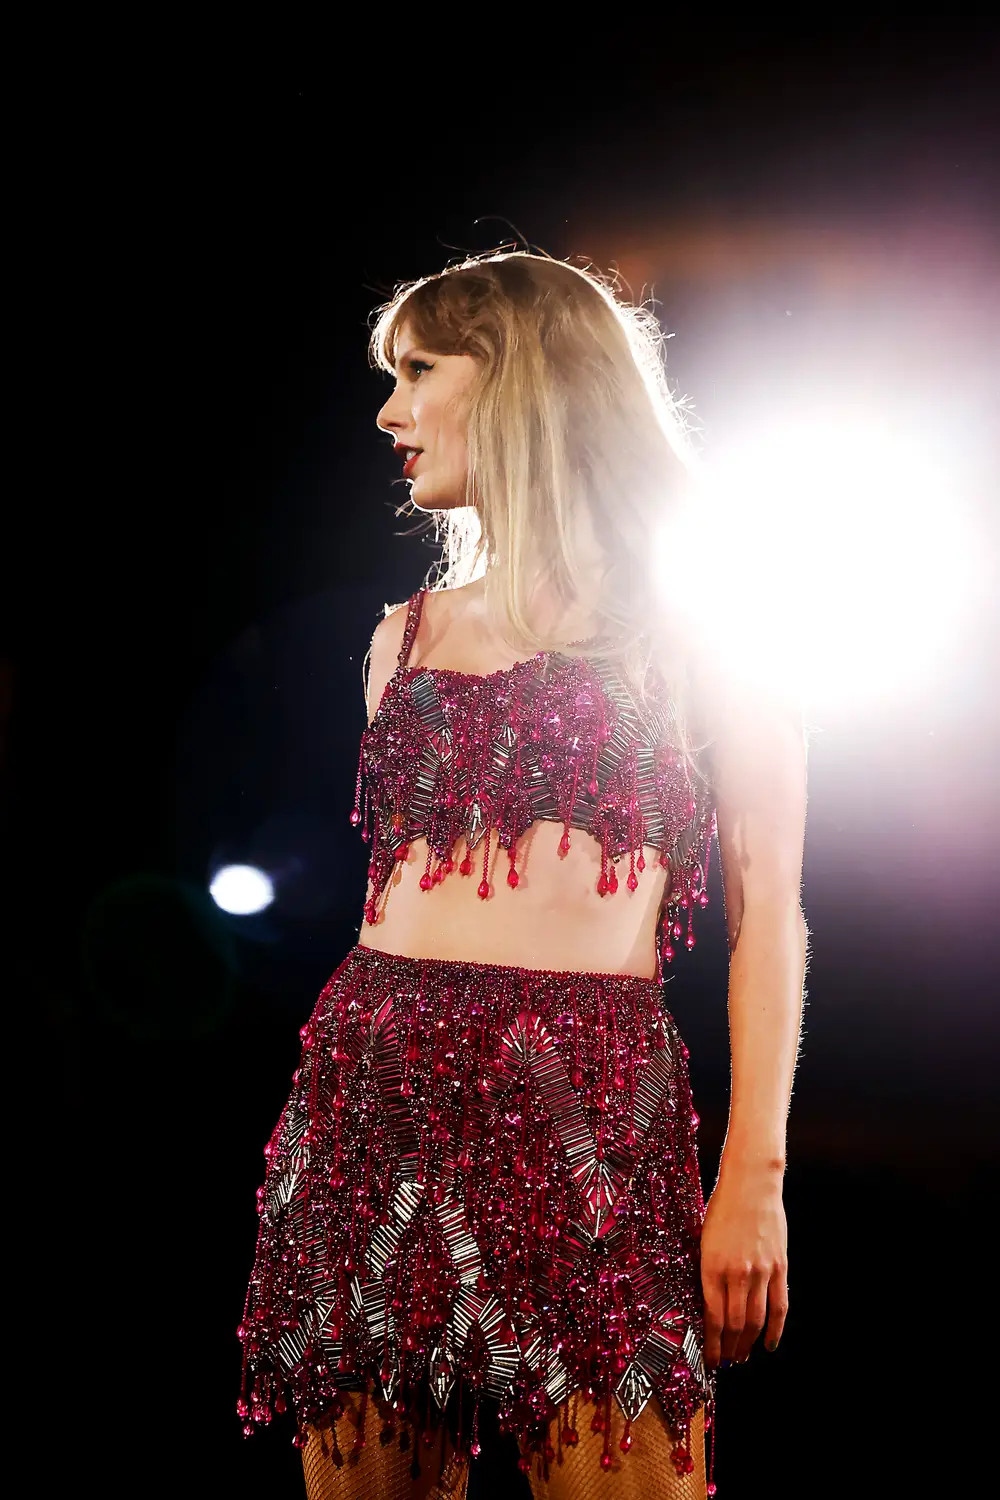 Thời trang váy không thể không yêu của Taylor Swift